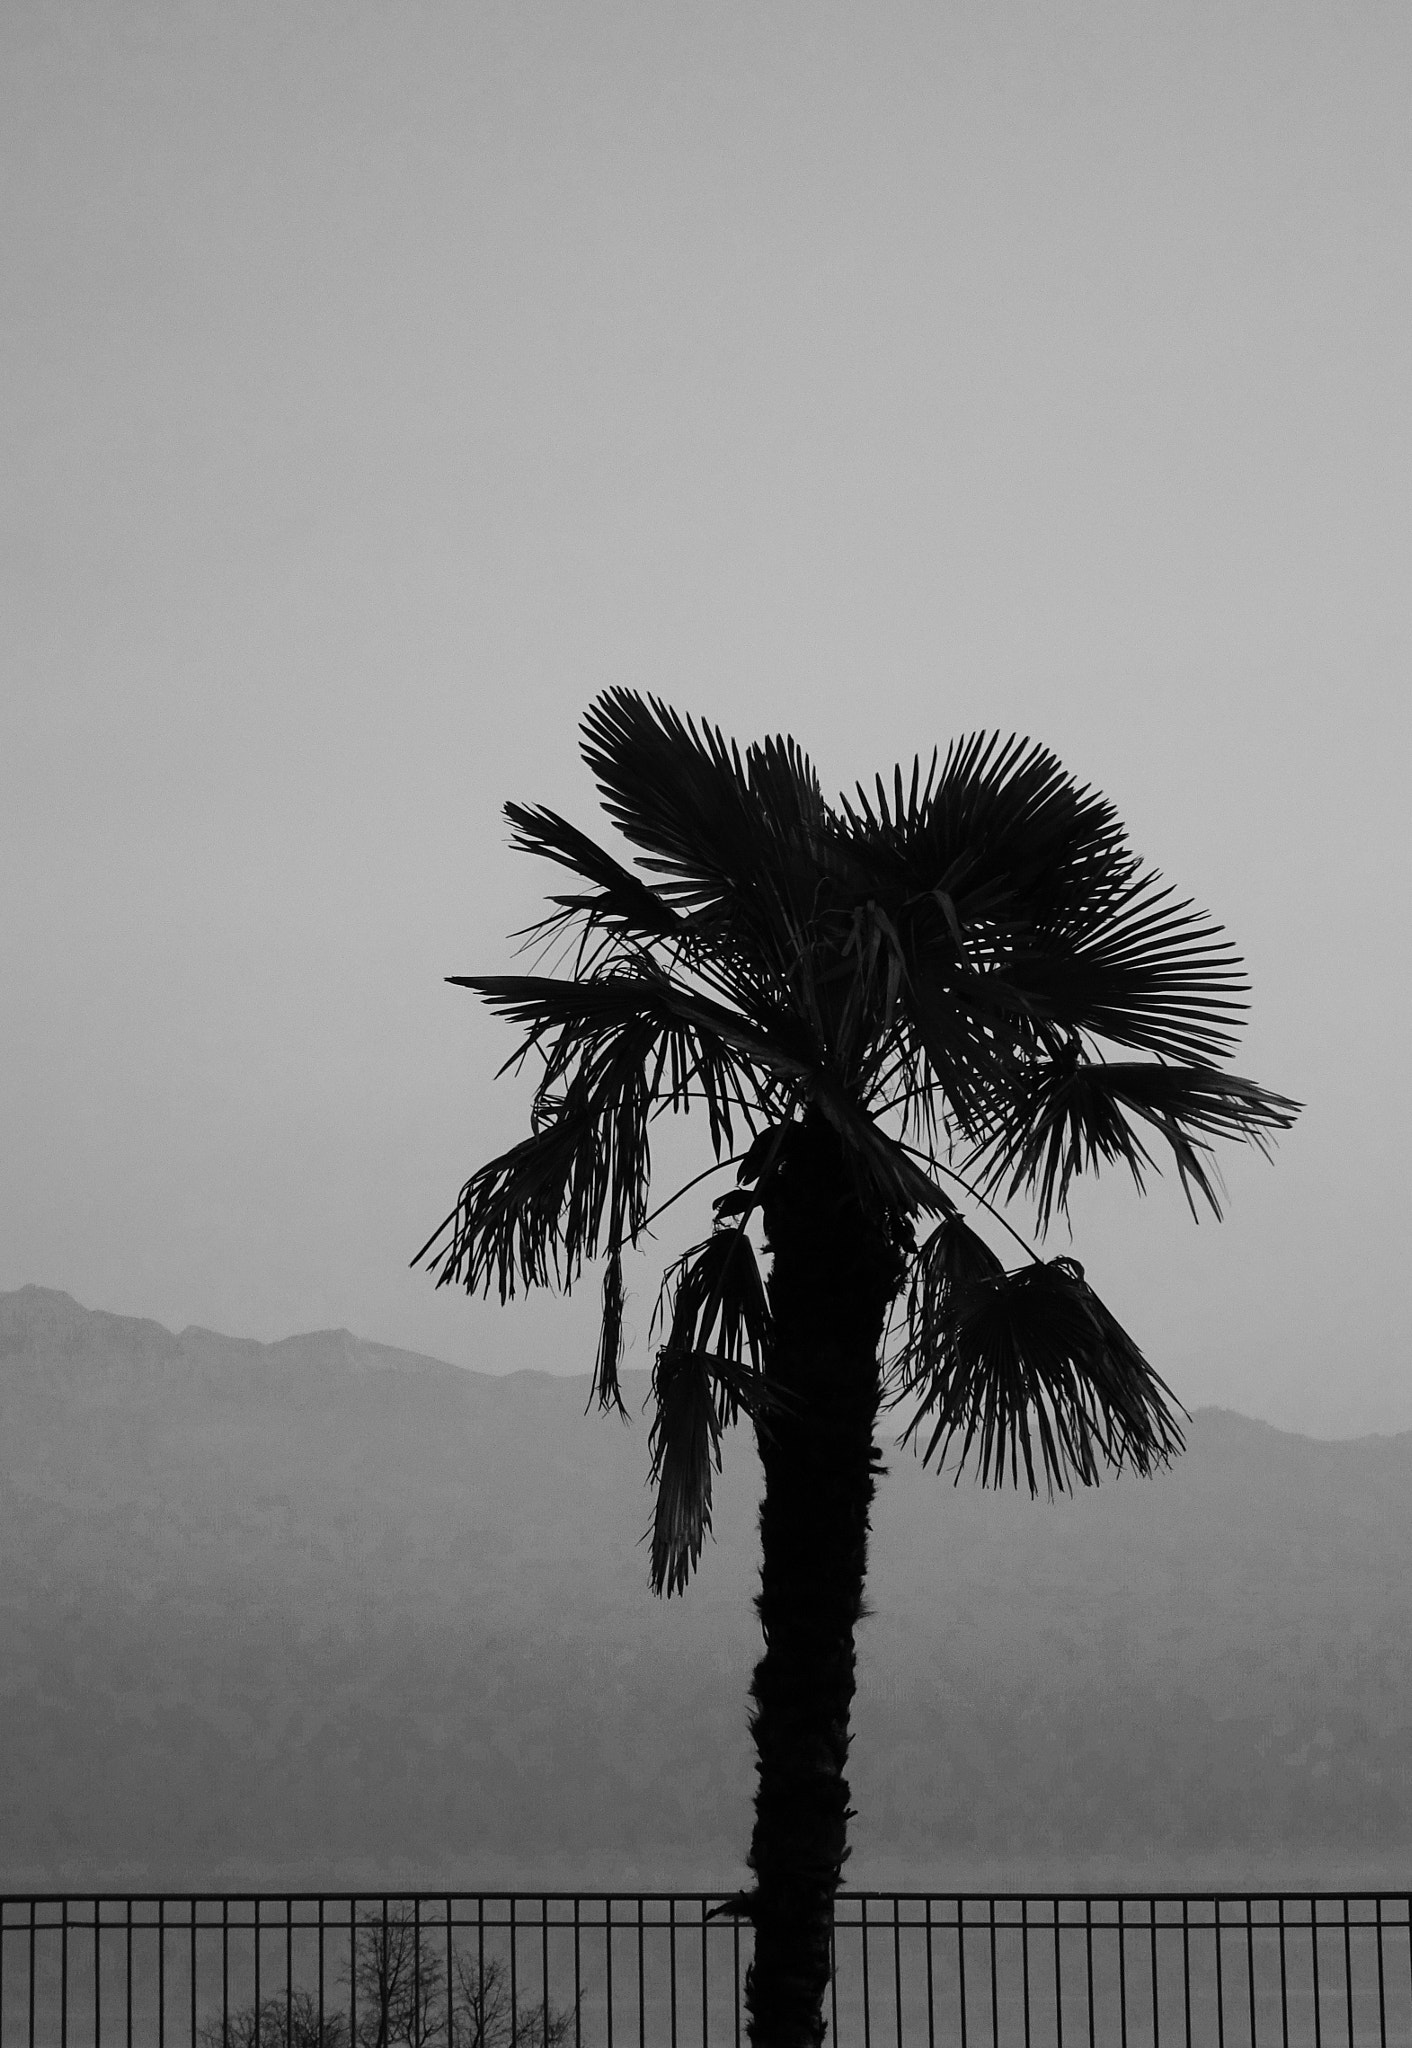 Sony Cyber-shot DSC-HX90V sample photo. Un palmier À lausanne sur la colline de montriond en janvier 2017 photography